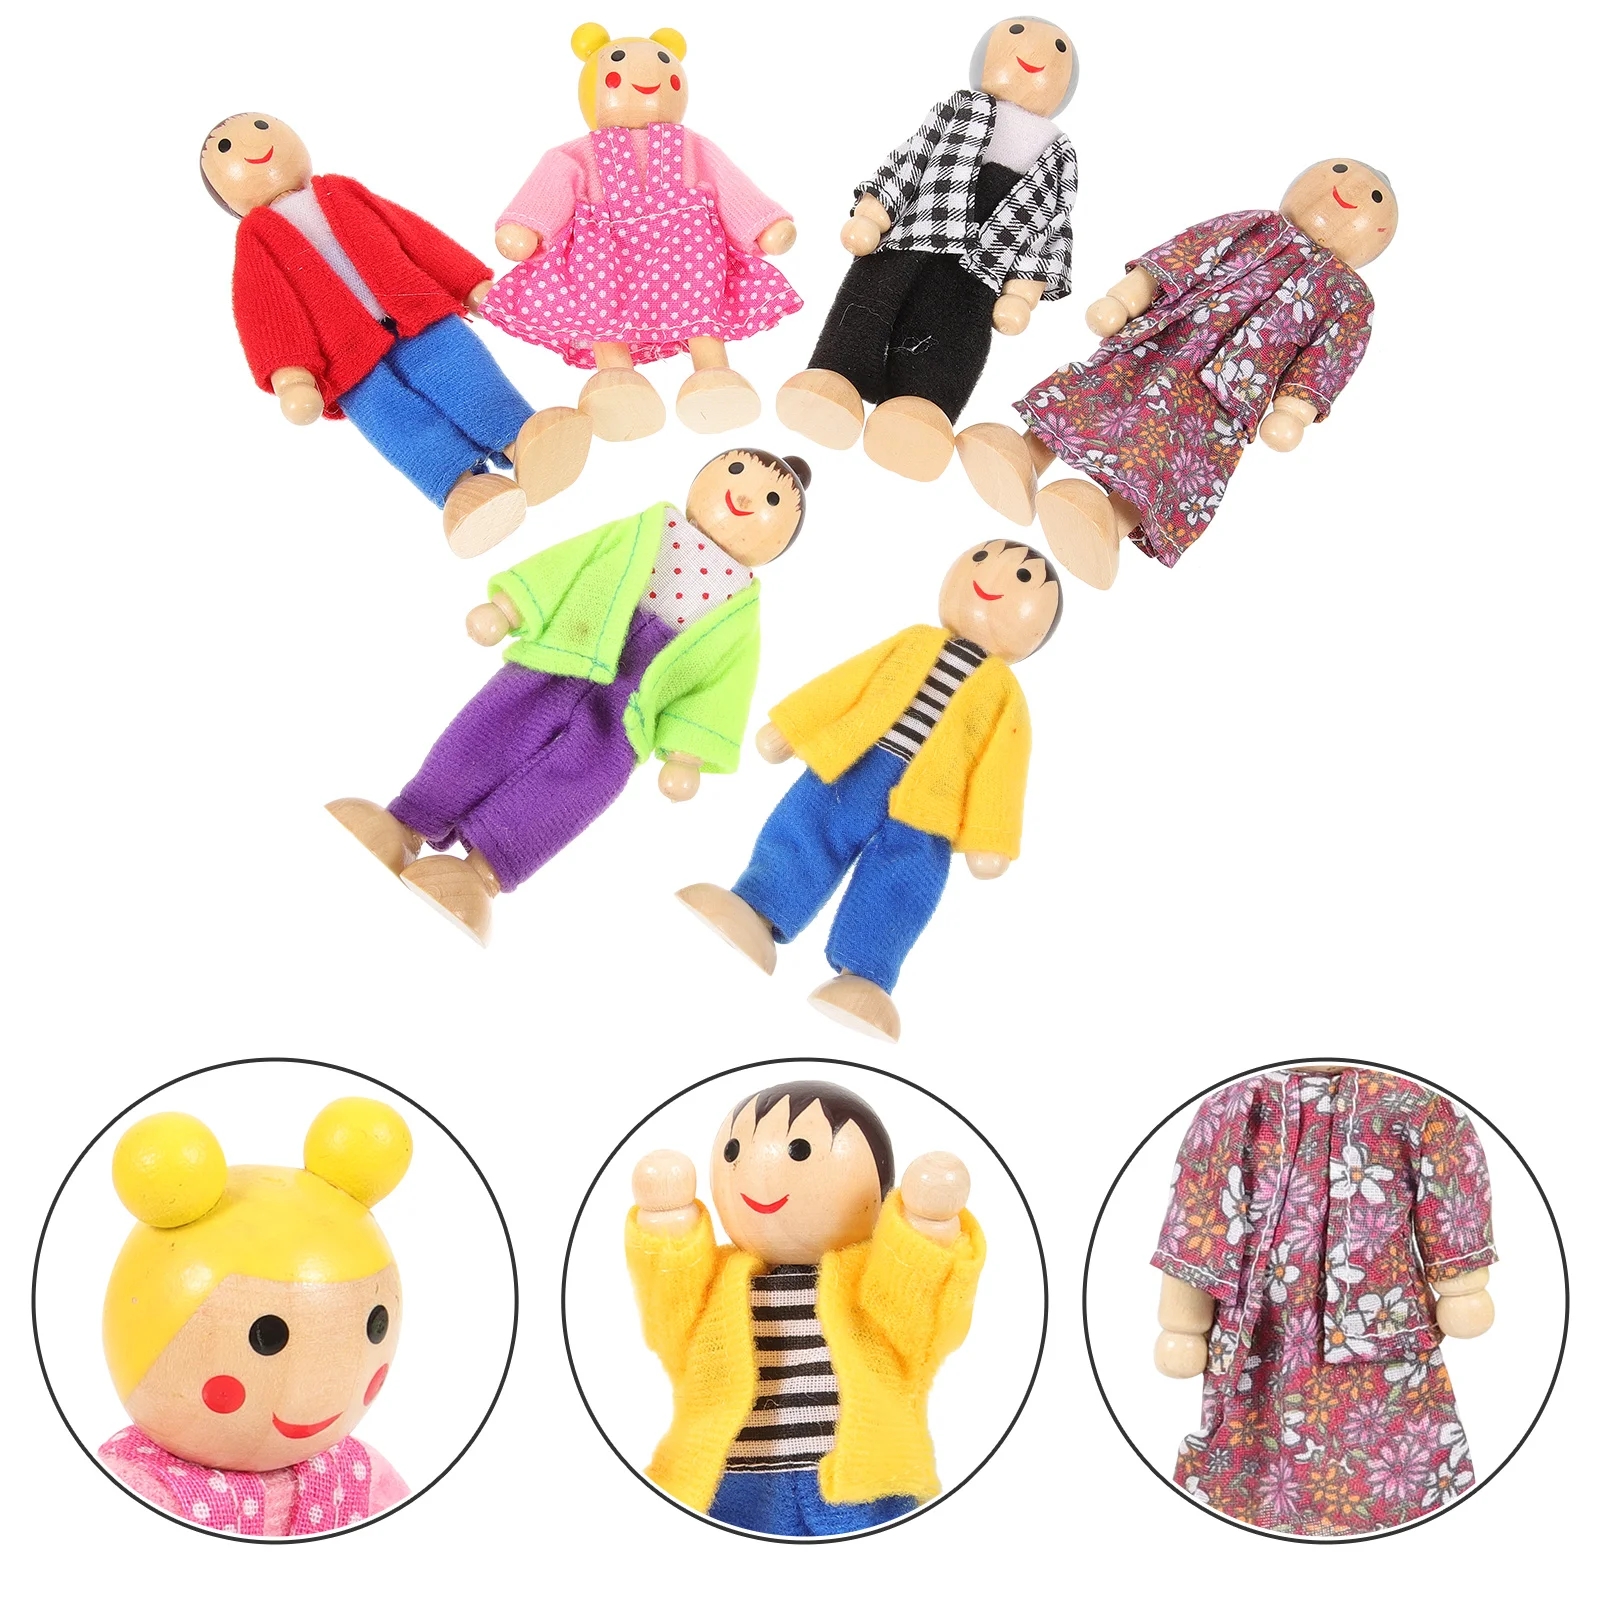 

Деревянные игрушки для ролевых игр, куклы, крошечные люди, фигурки, игровой дом Aldult, семья для малышей, дети, ребенок